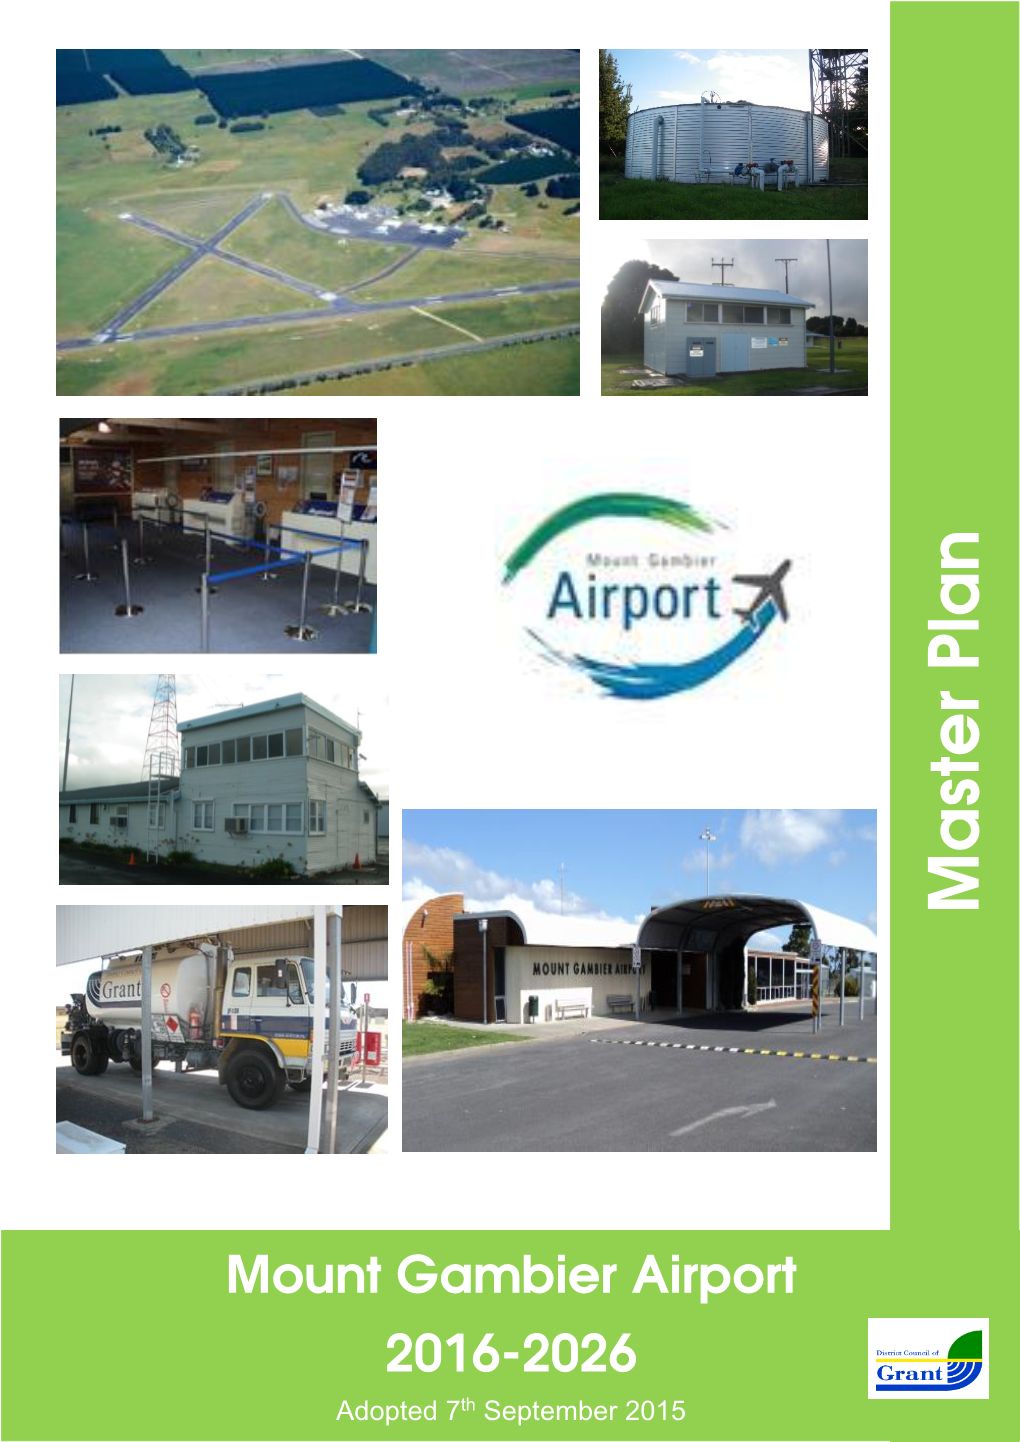 Airport Master Plan 2016-2026